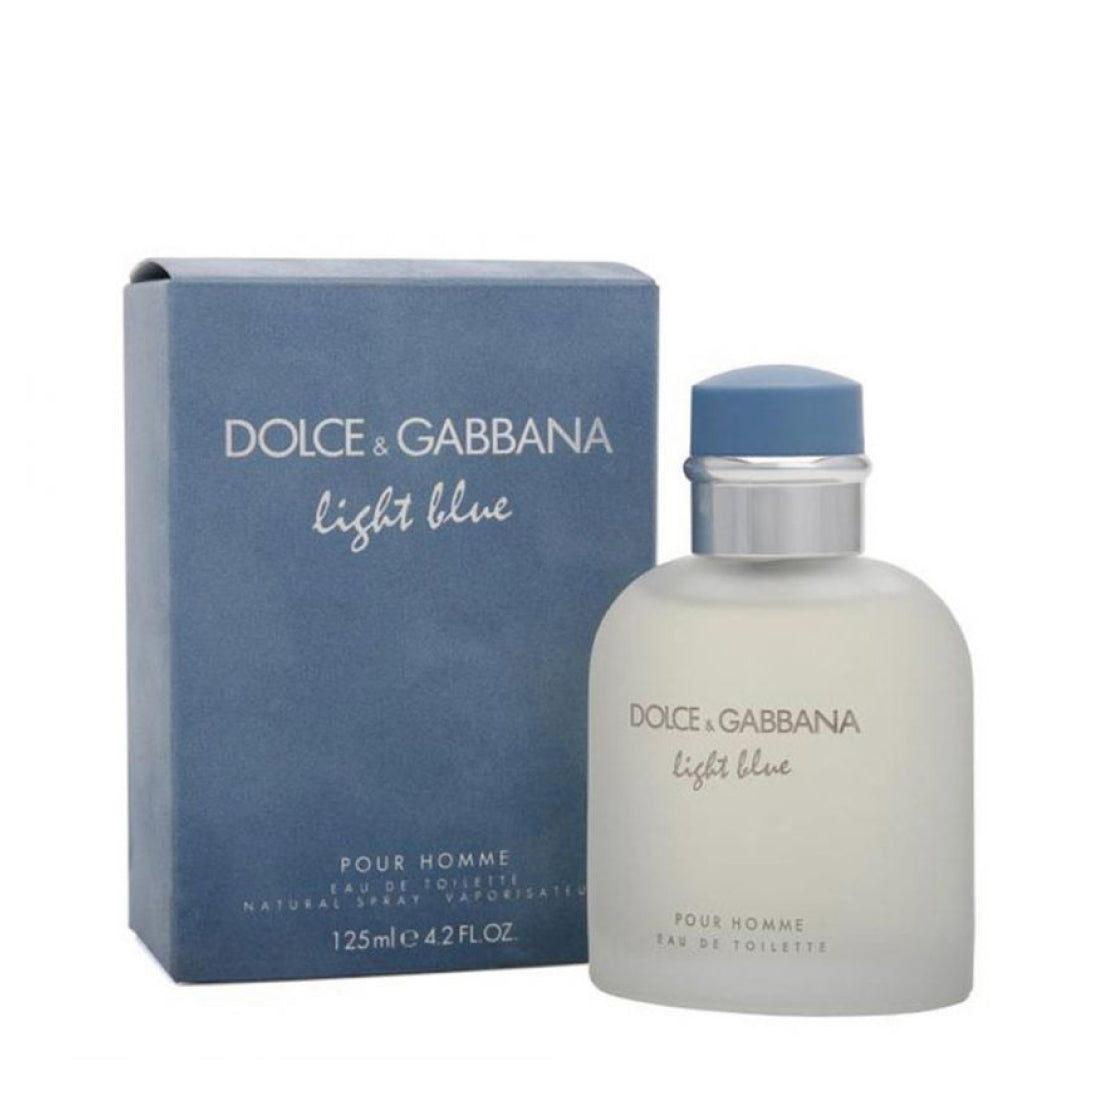 LIGHT BLUE HOMBRE EDT 125ML DOLCE & GABBANA - DOLCE & GABBANA